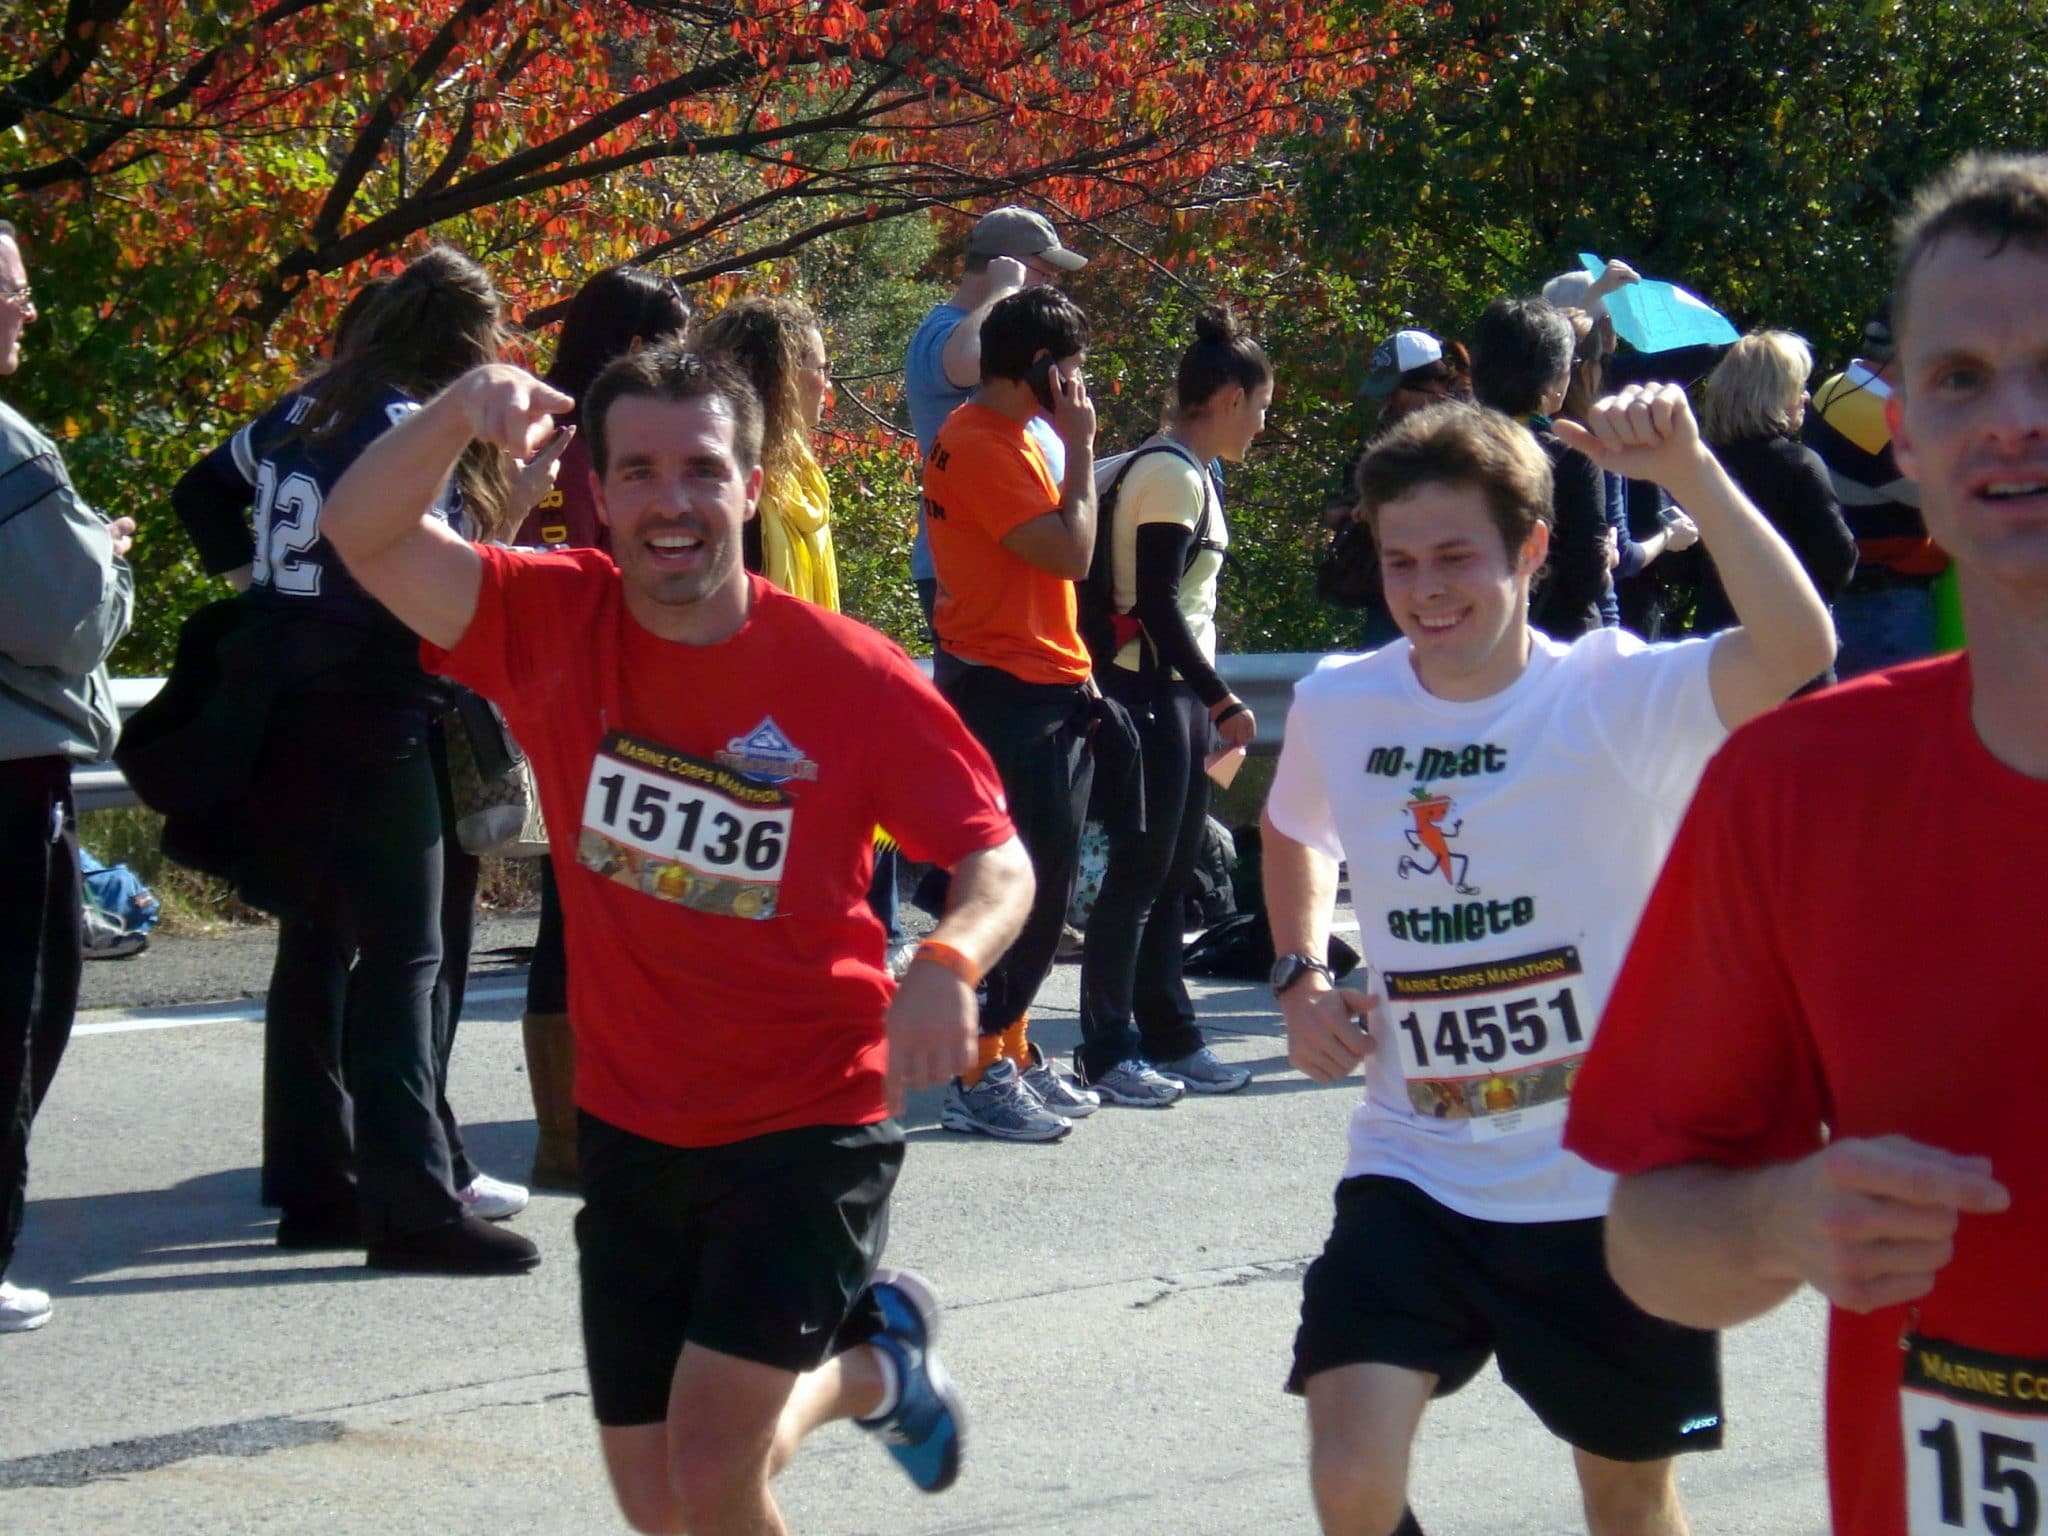 2 men running Marine Corps Marathon 2010